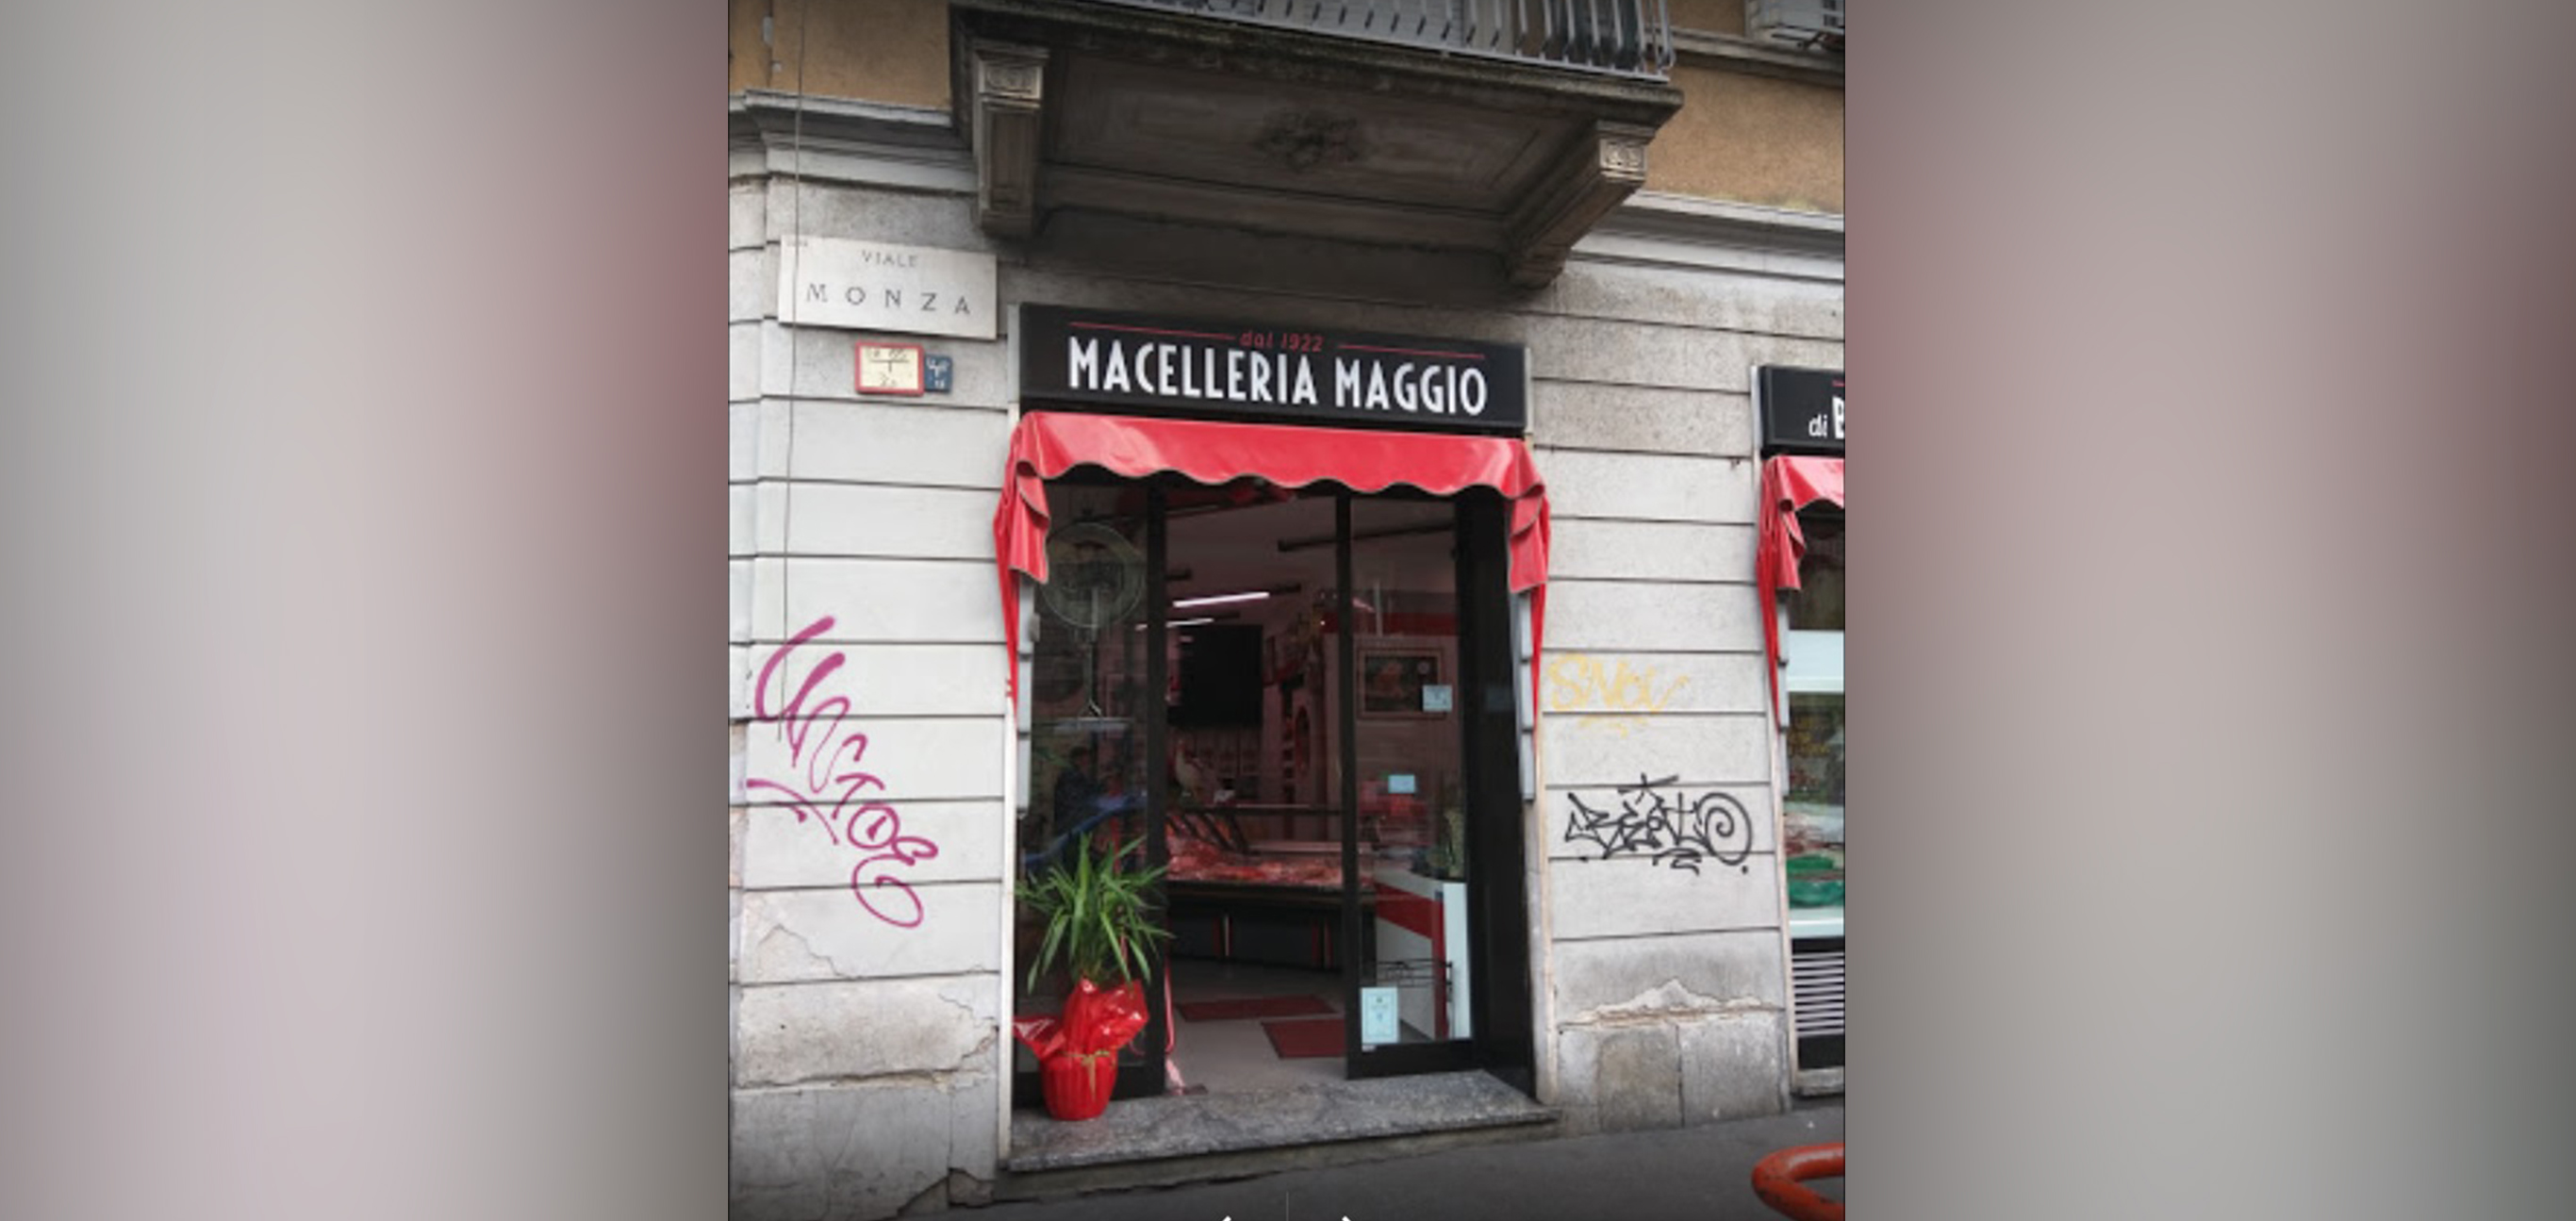 MACELLERIA MAGGIO DI BIASSONI_1